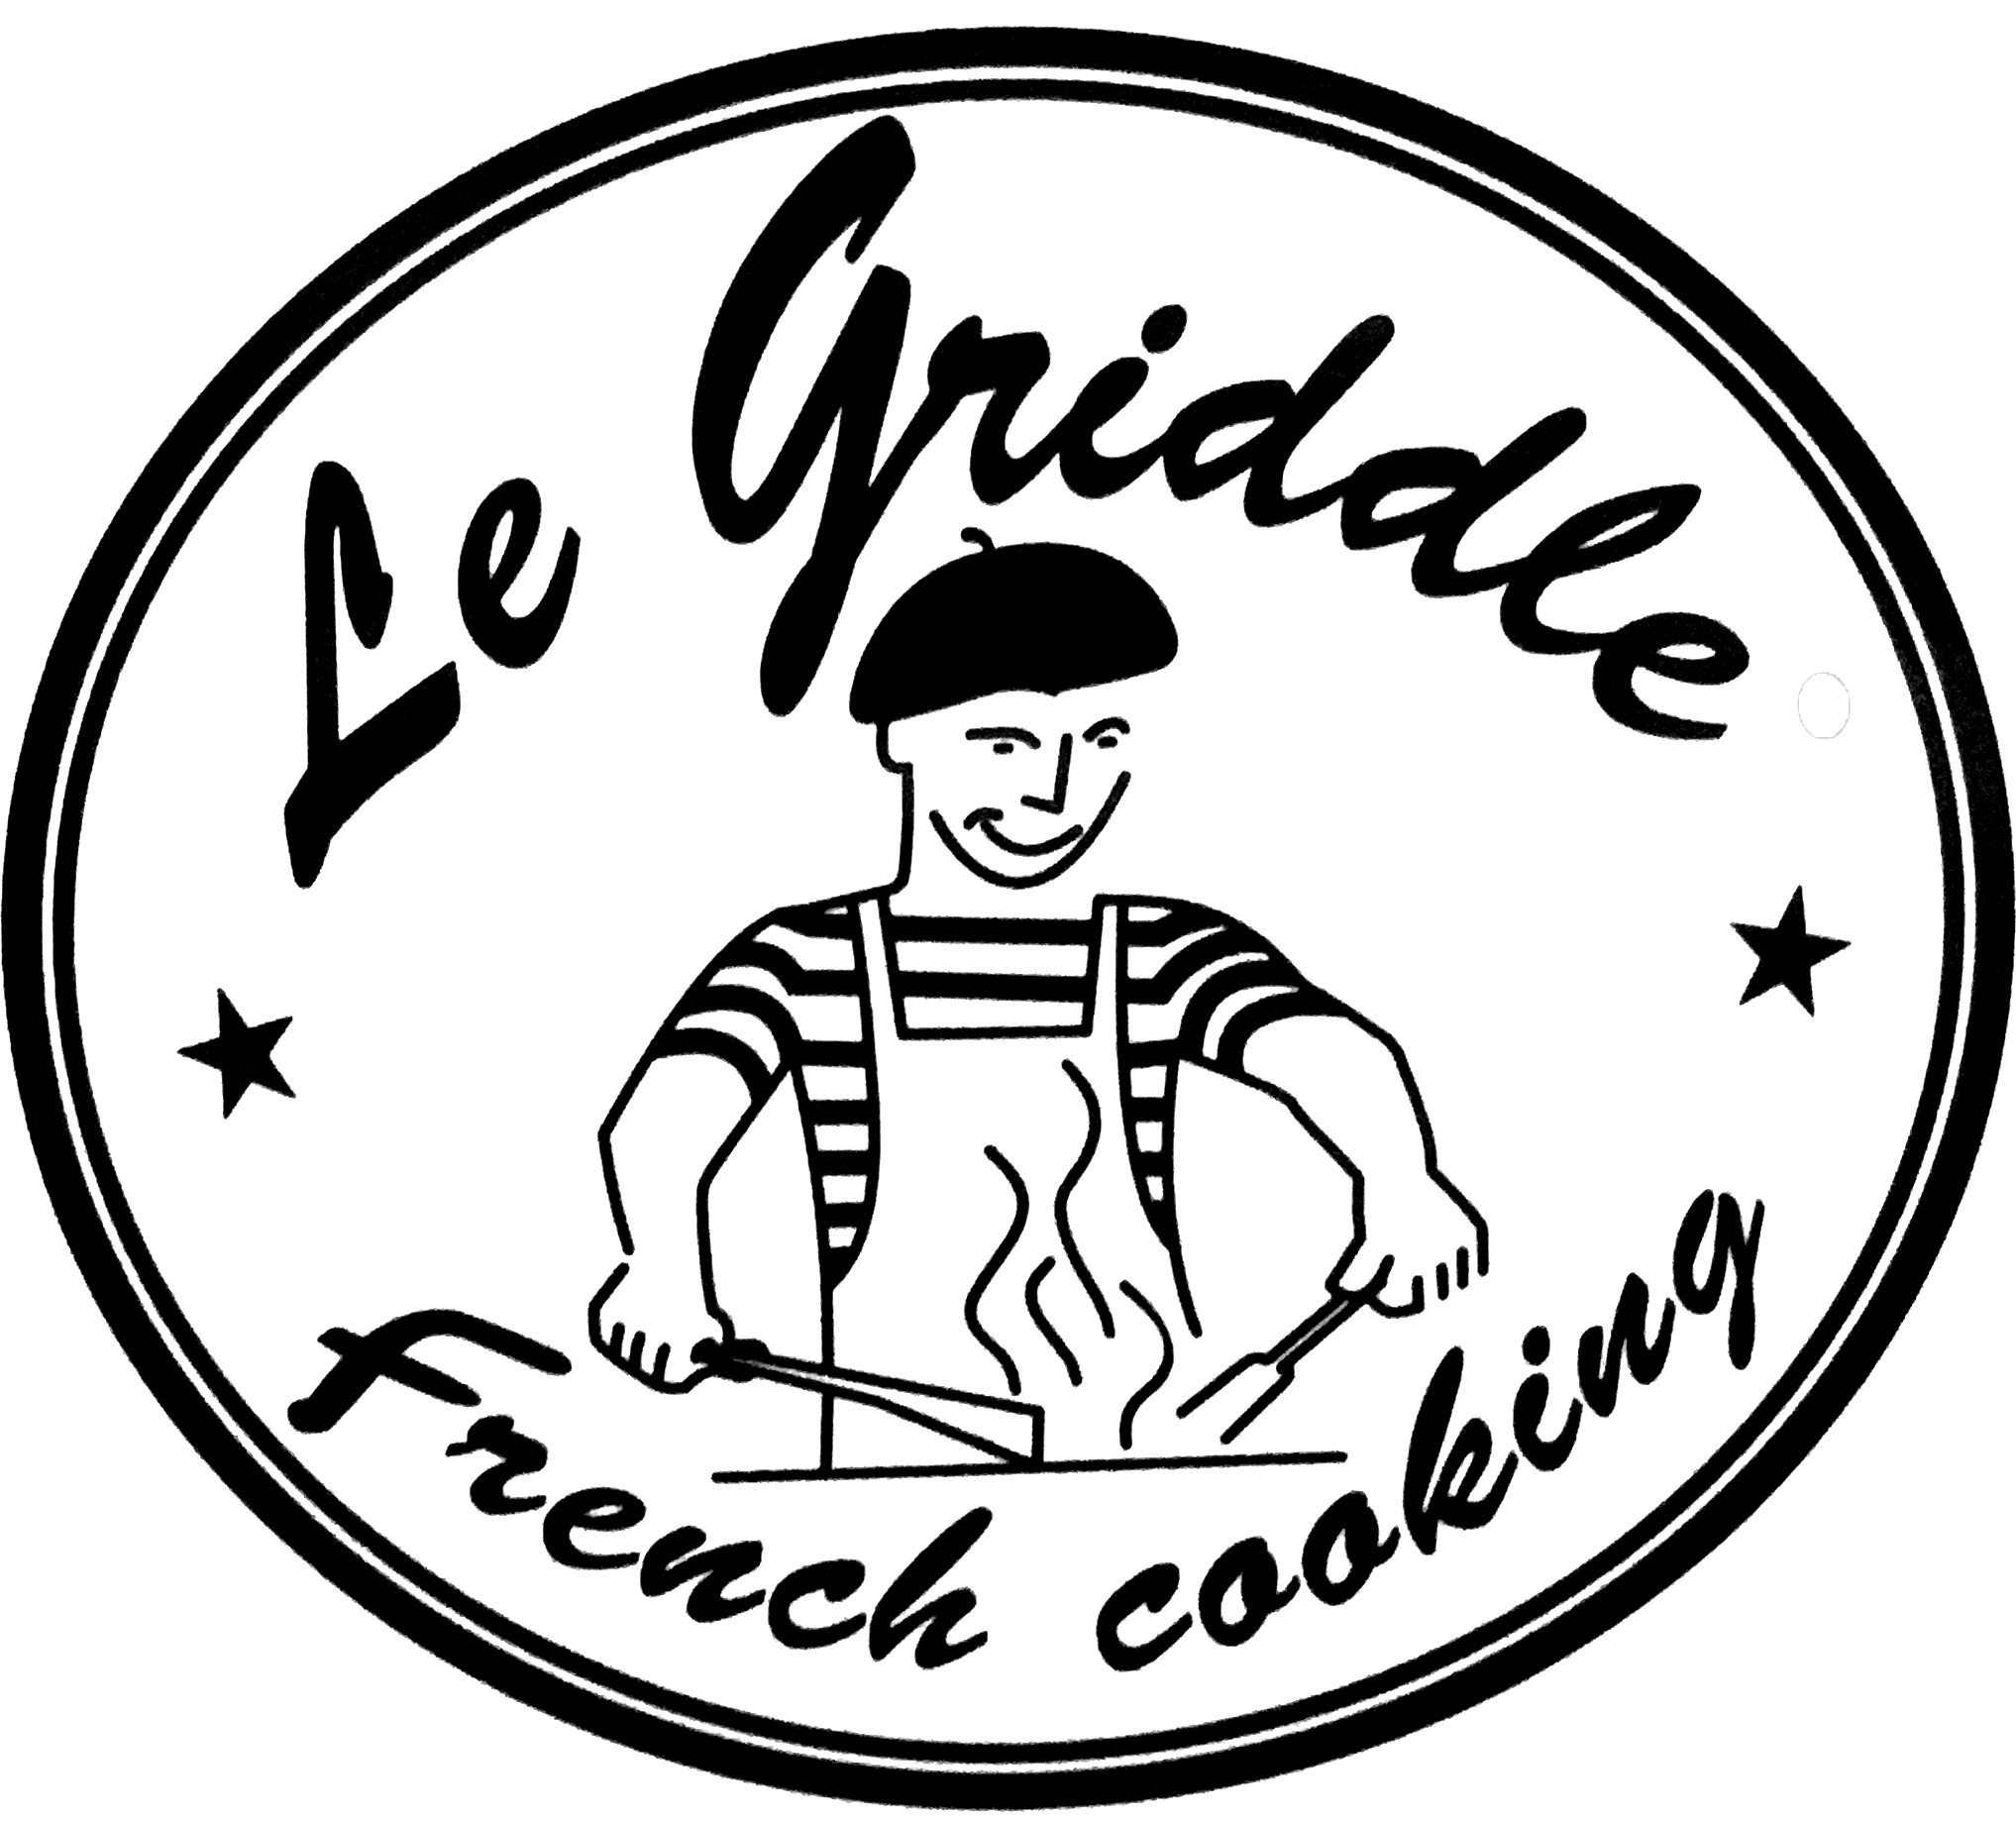 https://amsfireplace.com/content/legriddle/Le_Griddle_Logo.png